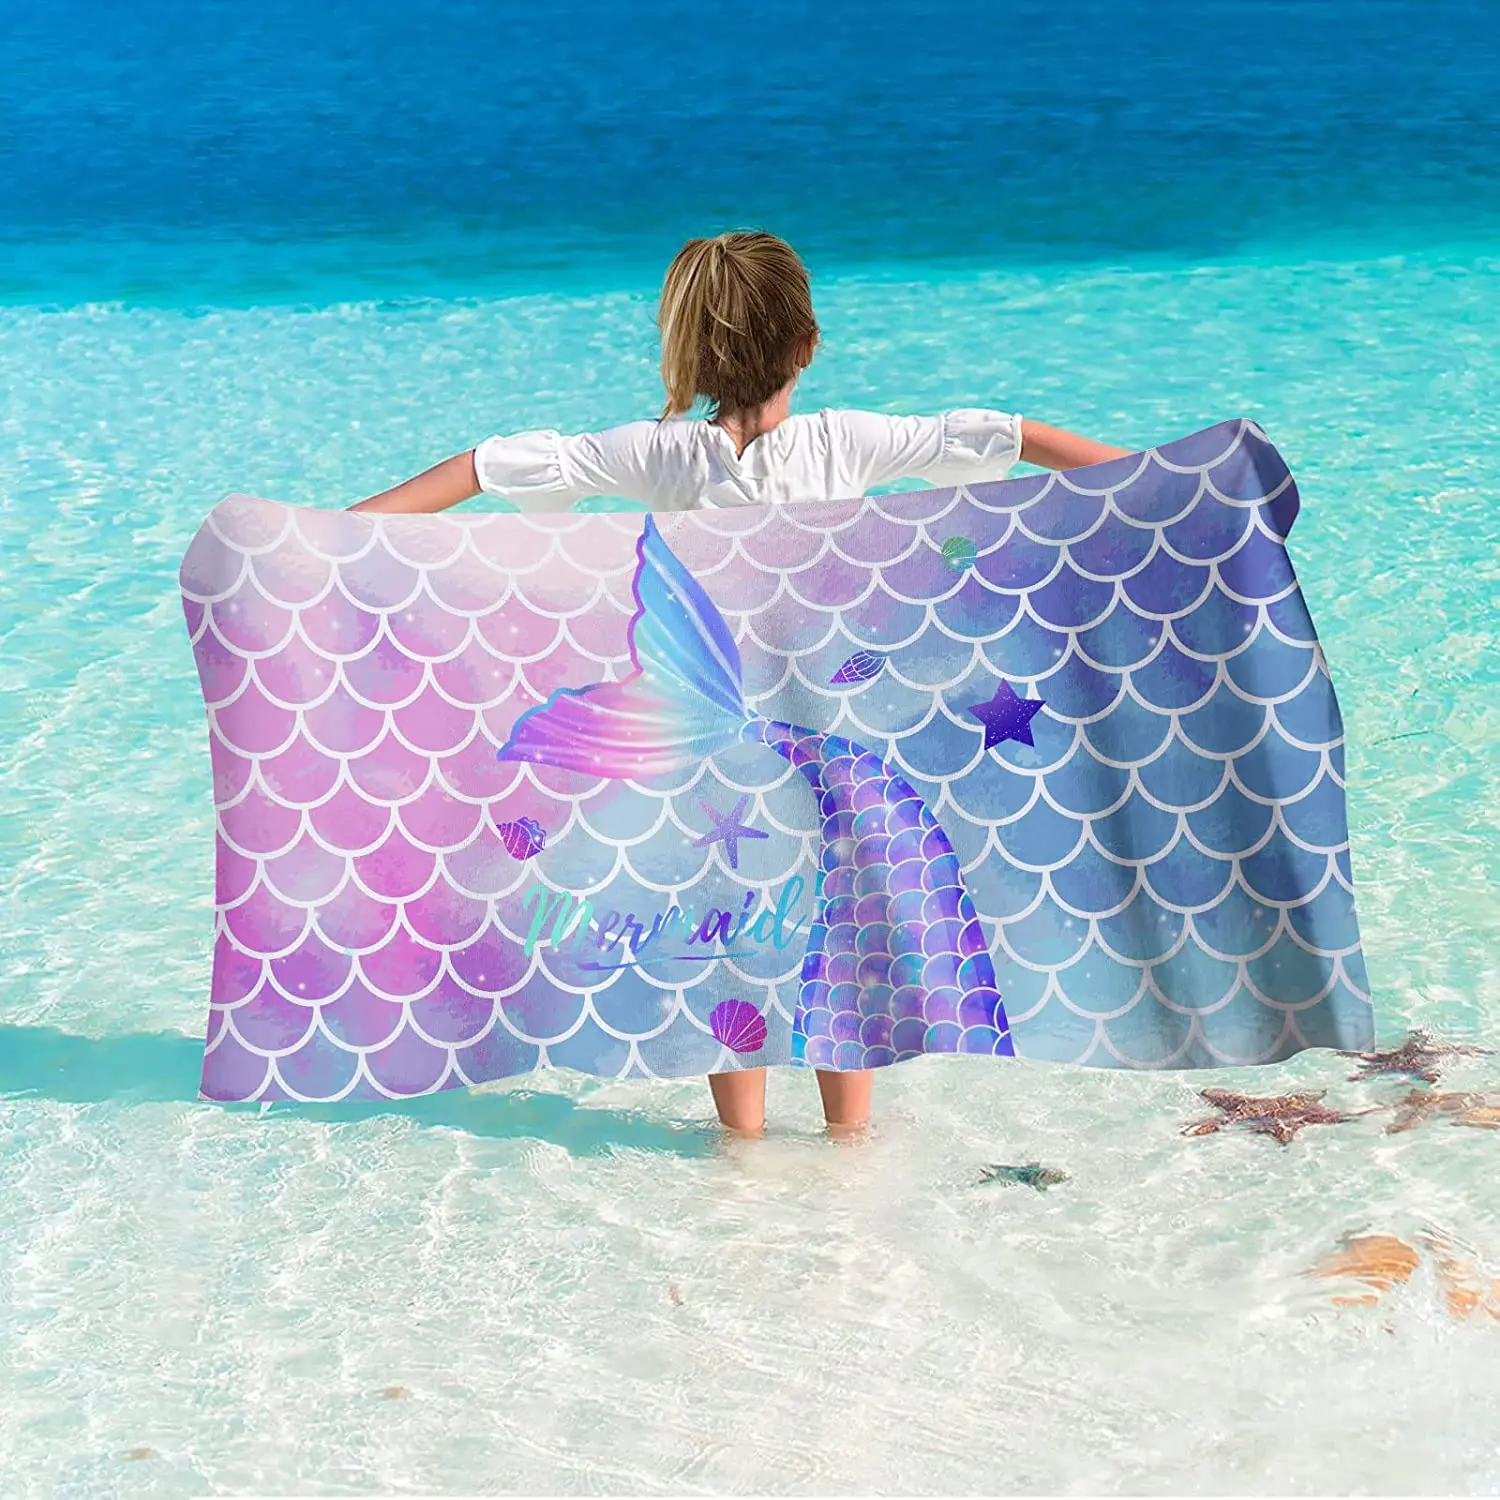 

Пляжное полотенце MUSOLEI, 80x160 см, быстросохнущее пляжное полотенце без песка, детское пляжное полотенце для путешествий на пляж, подарок для детей